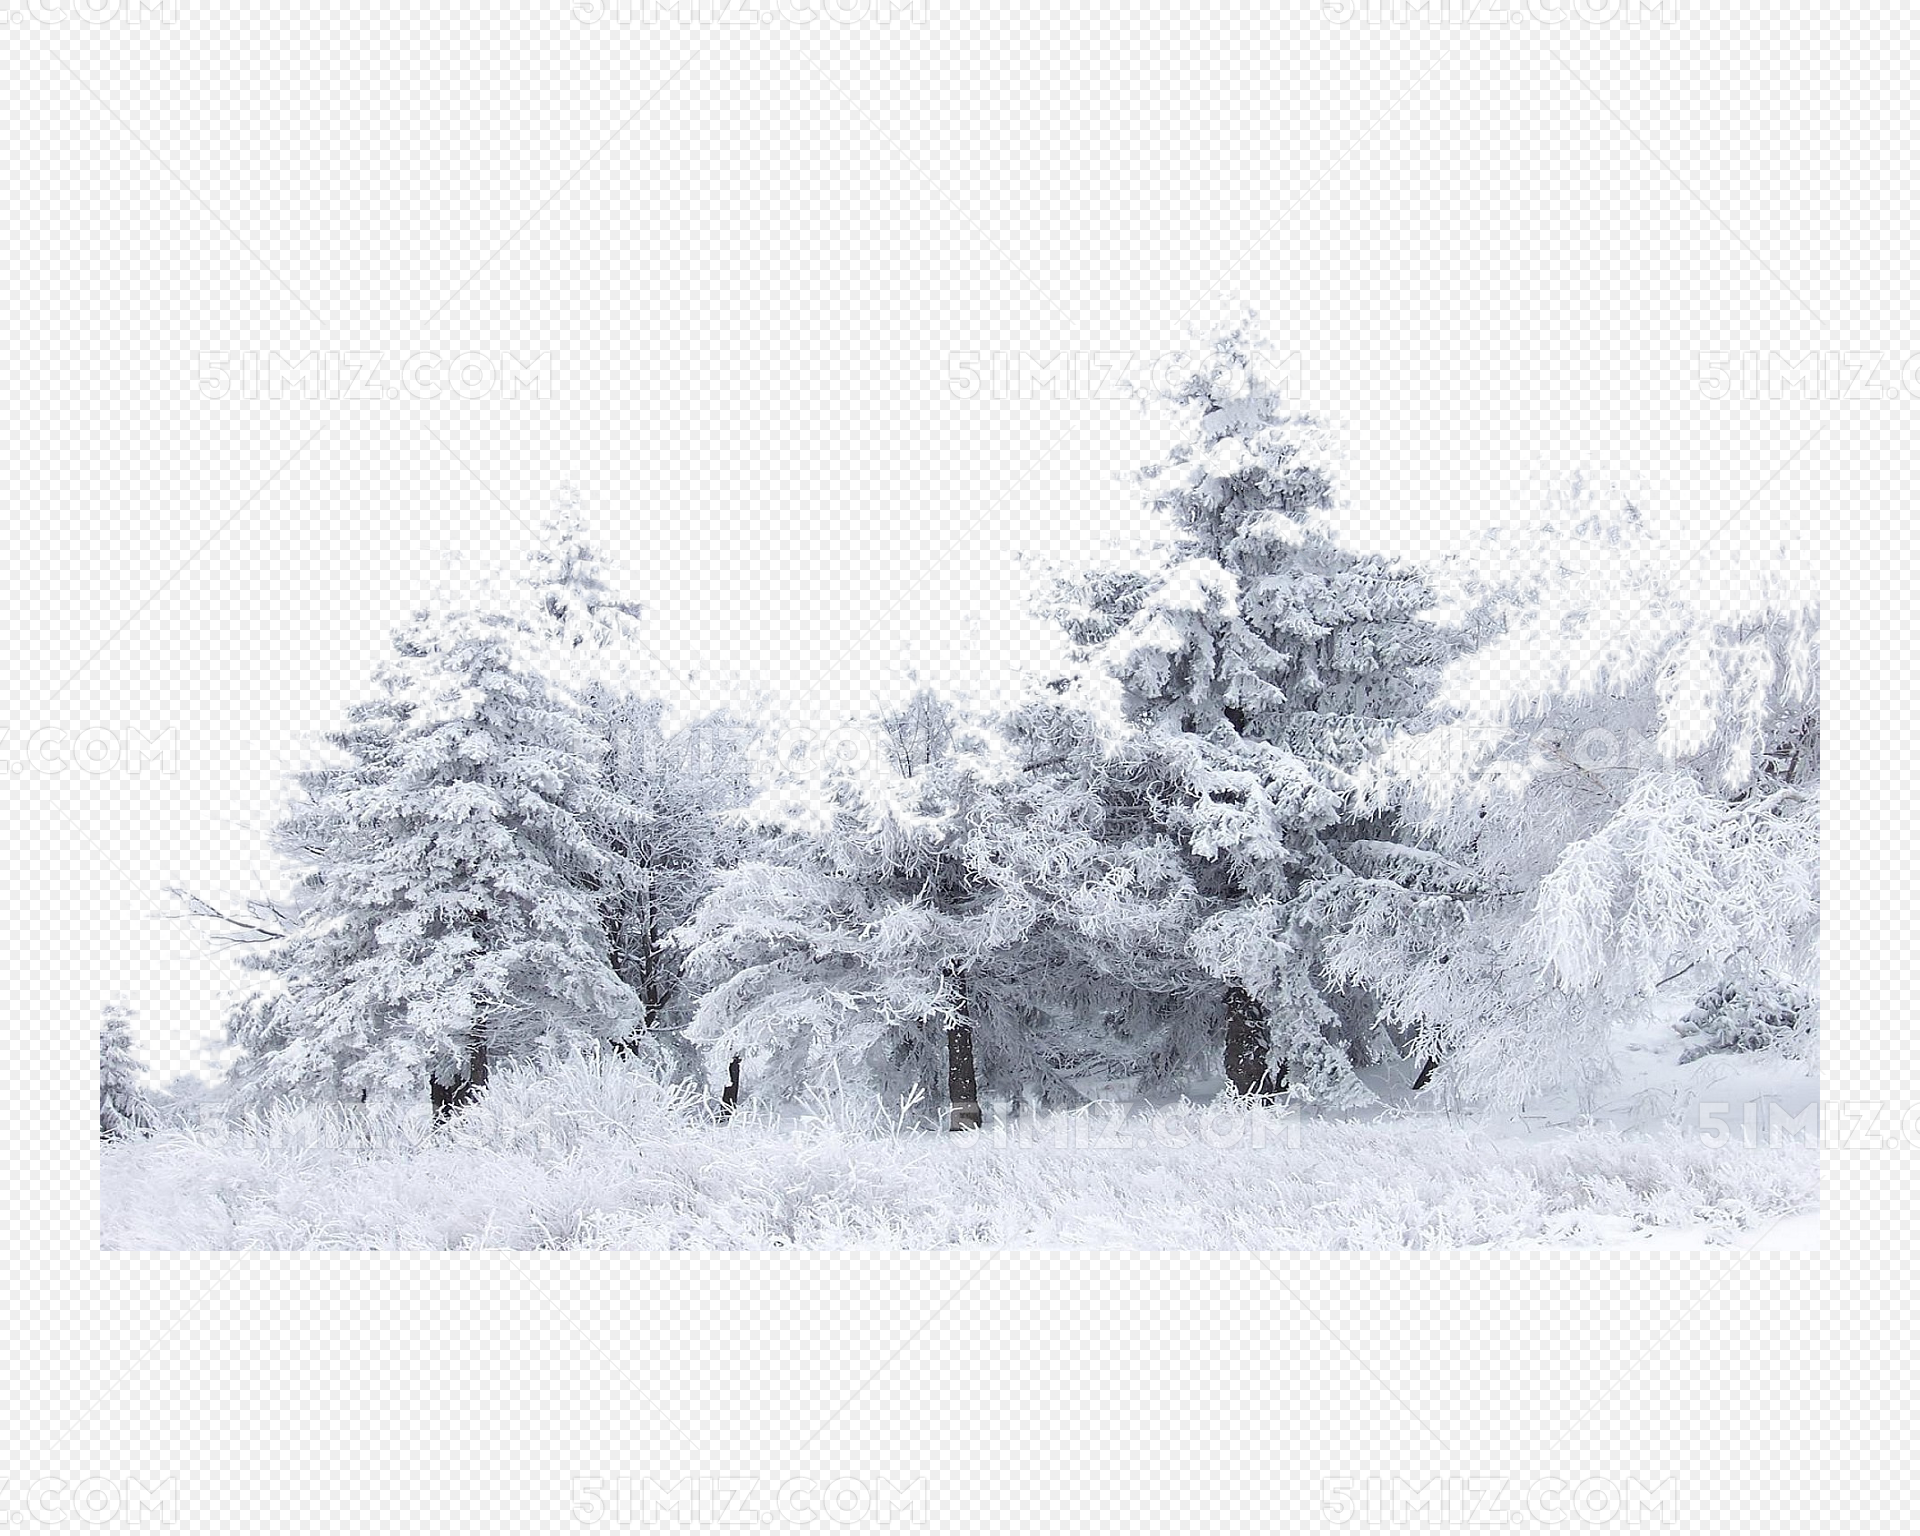 冬季树林的雪松雪景桌面壁纸-壁纸图片大全